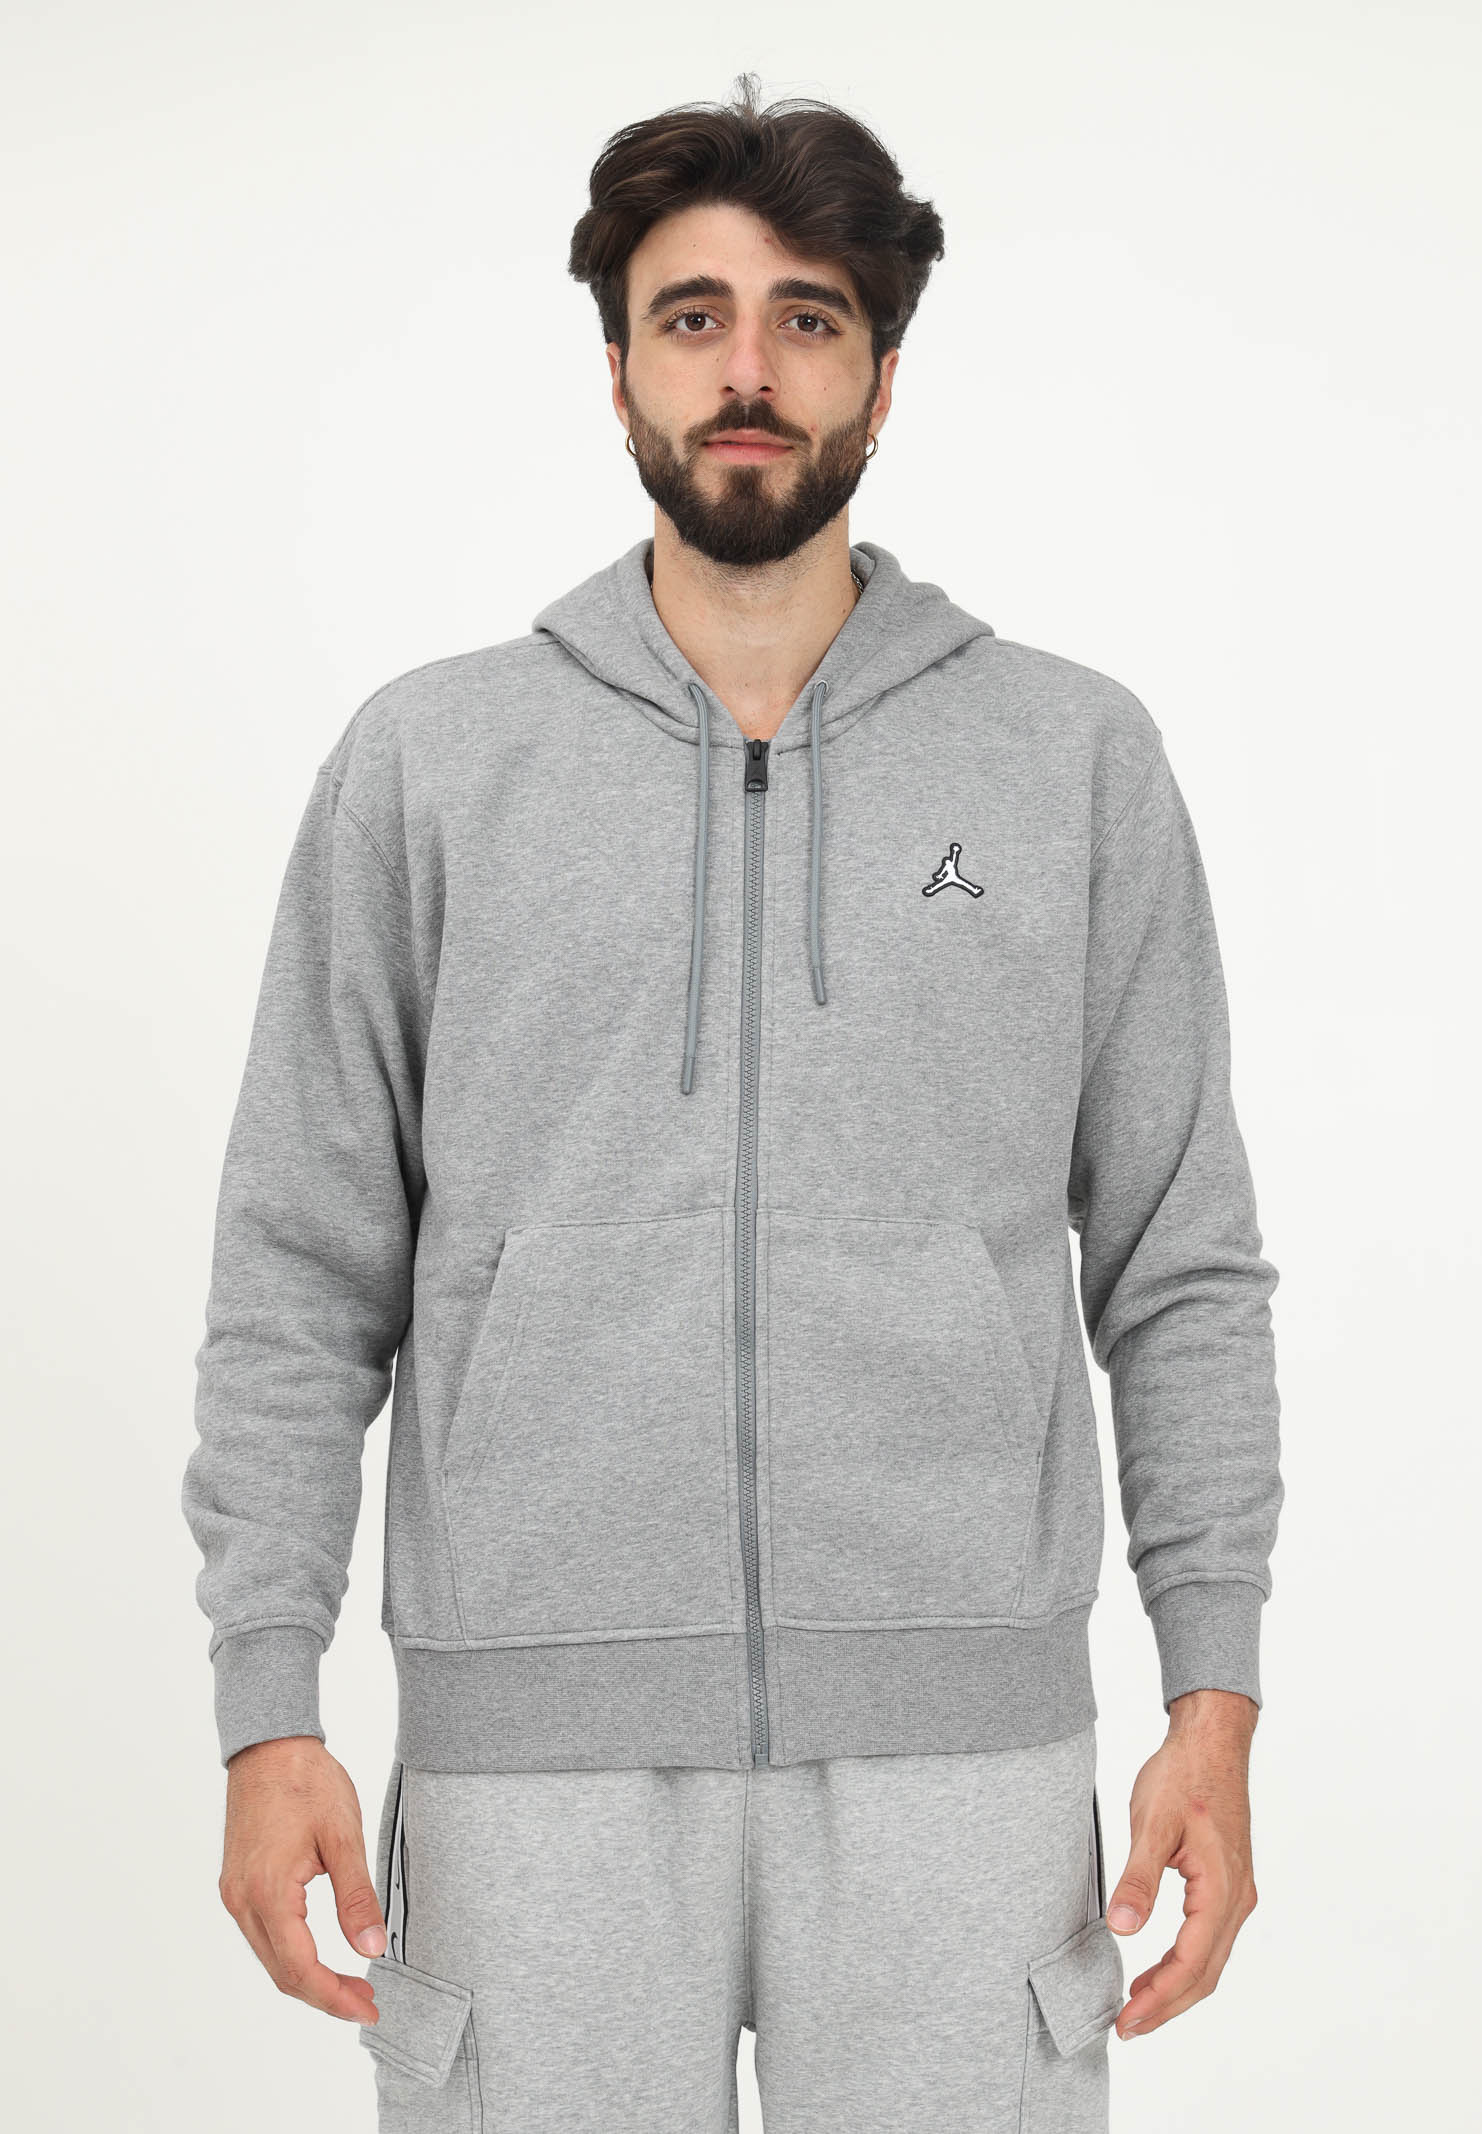 Fleece Sweatshirt Man Woman Gray Carbon Heater Jordan Essentials with hood and zip NIKE | DQ7350091